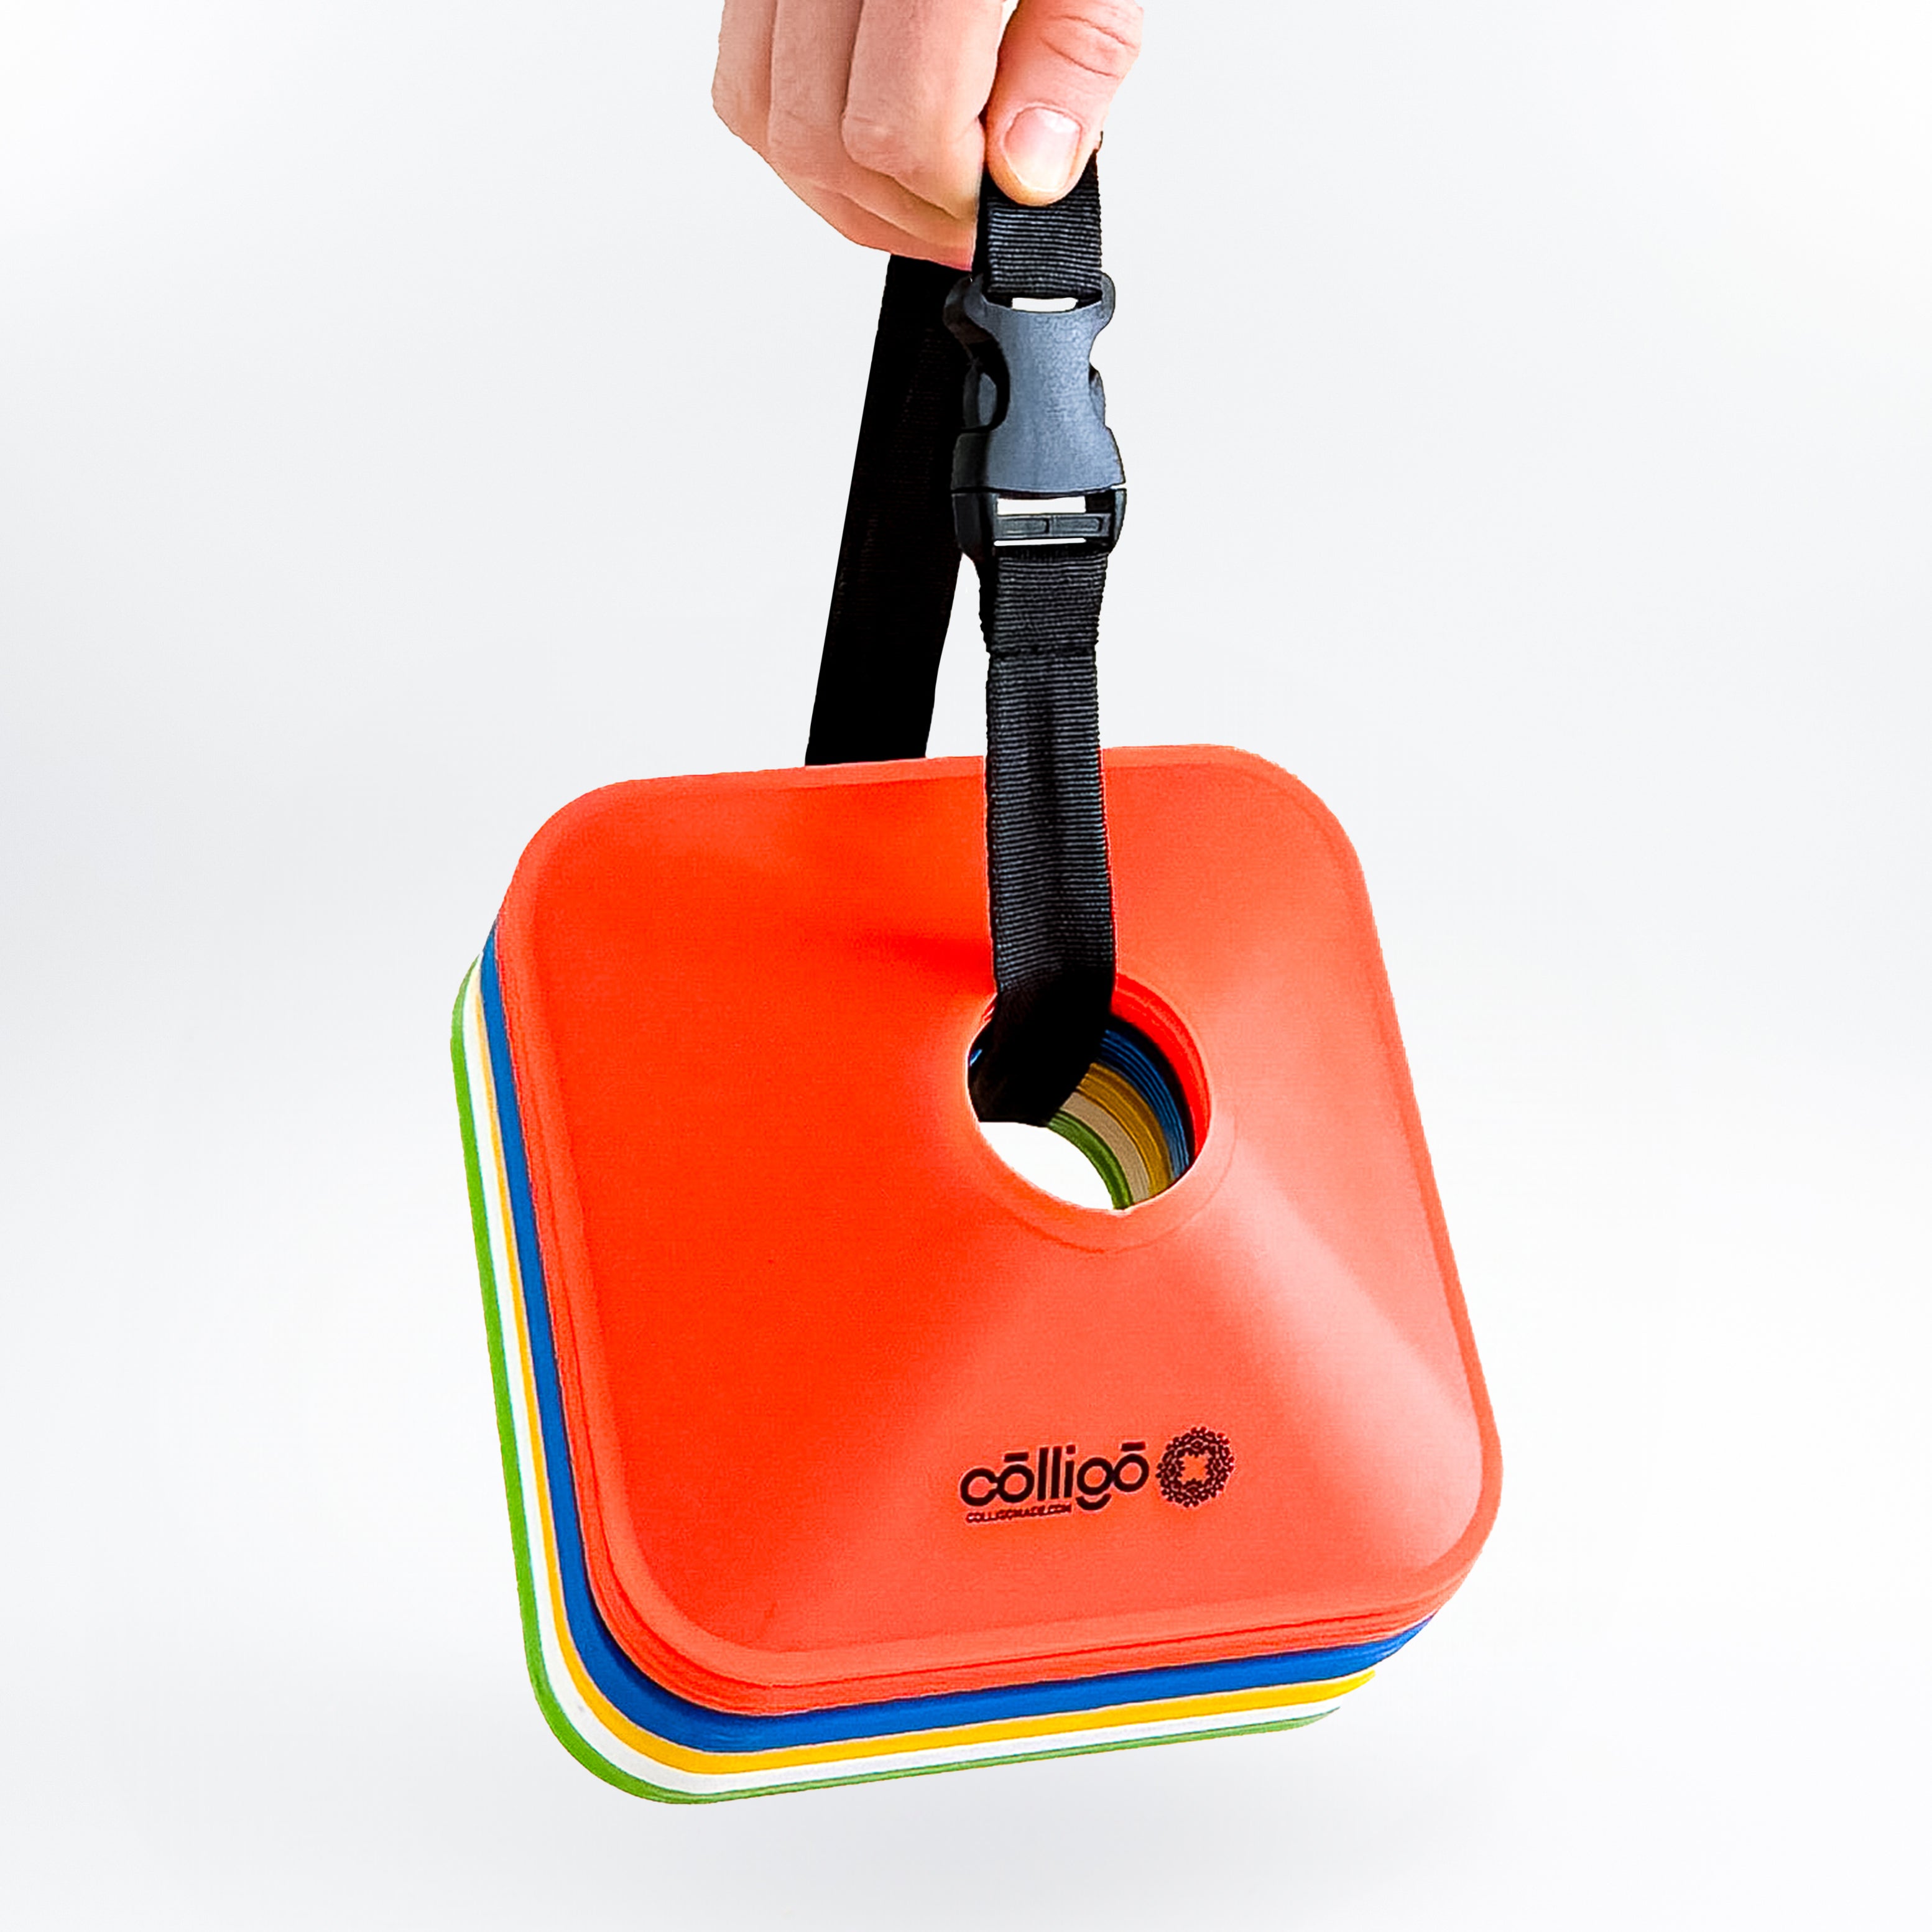 Colligo Low-profile Square Training Cones - Colligo